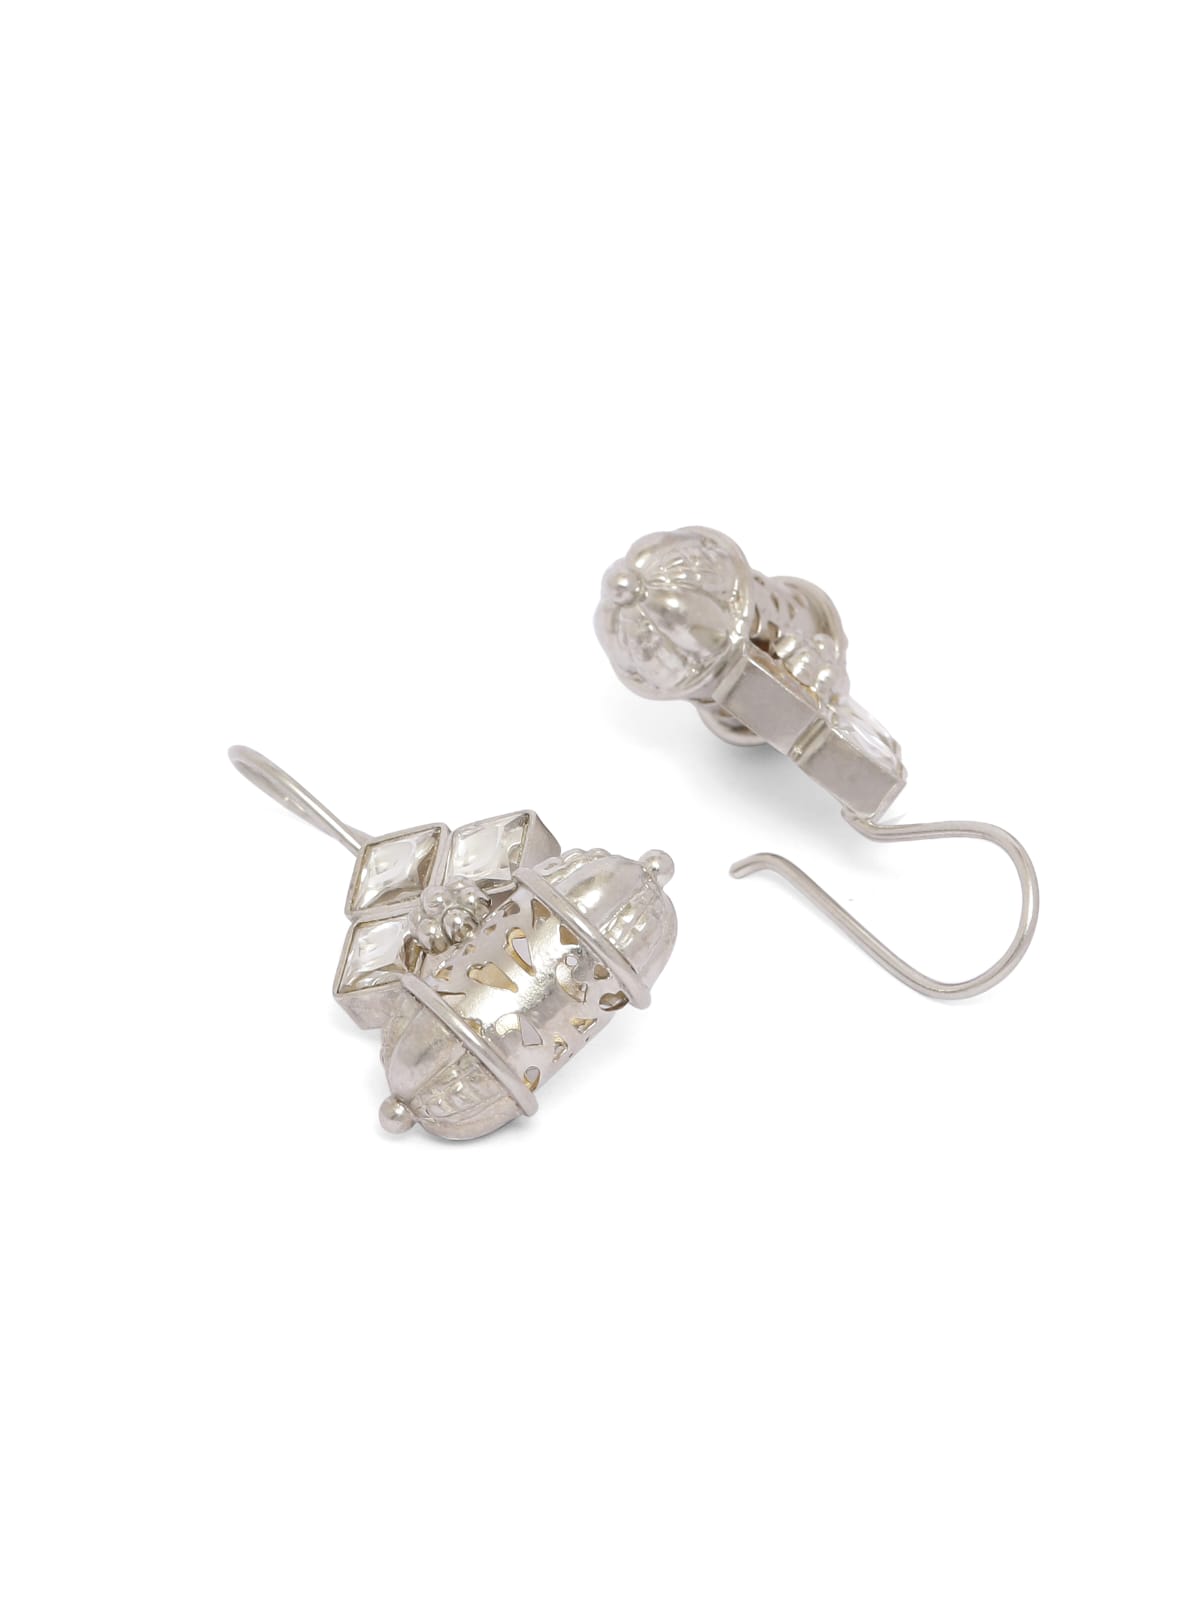 92.5 sterling Silver tabeez hook earrings.